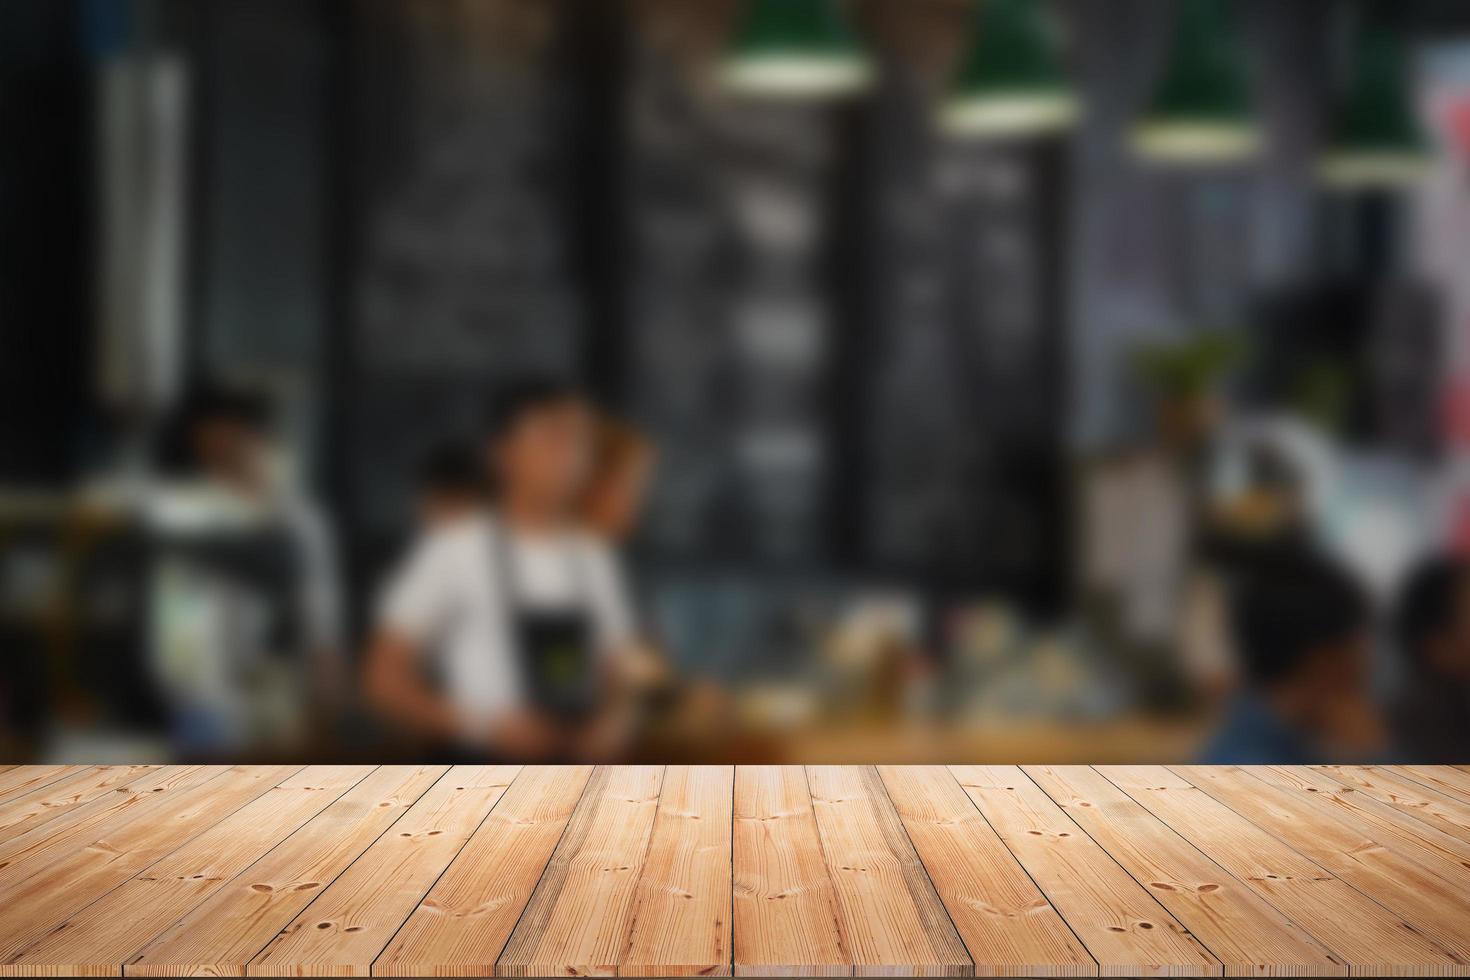 dessus de table en bois avec flou de personnes dans un café ou un café, fond de restaurant photo